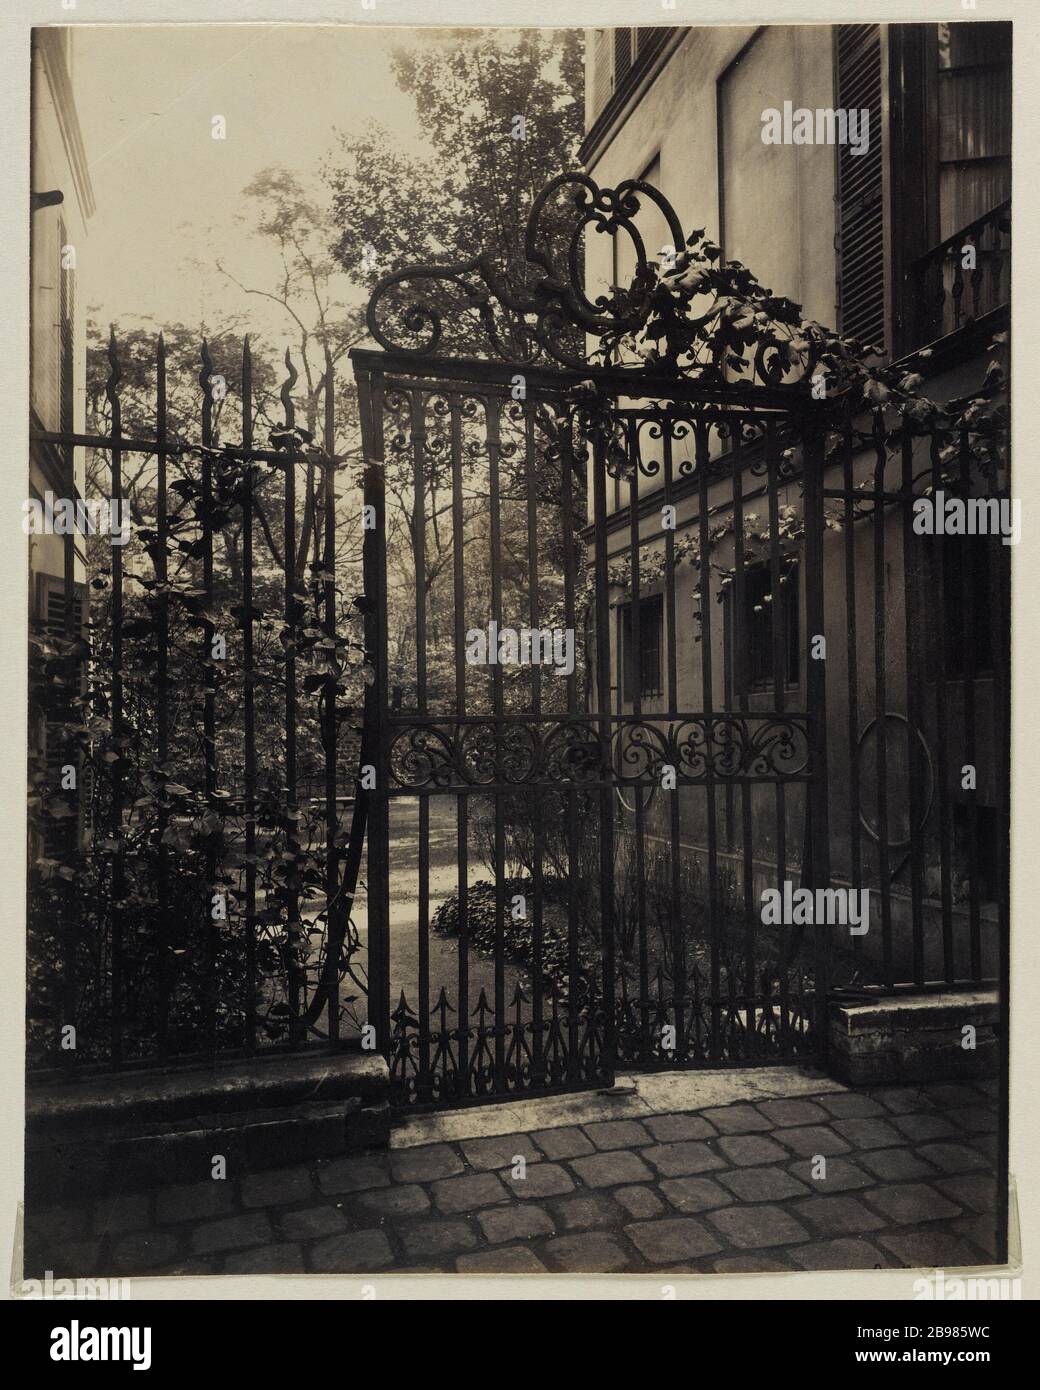 29 SAINT GUILLAUME, 7TH DISTRICT, PARIS 29 rue Saint-Guillaume, Paris (VIIème arr.), 1922. Photographie d'Eugène Atget (1857-1927). Paris, musée Carnavalet. Stock Photo